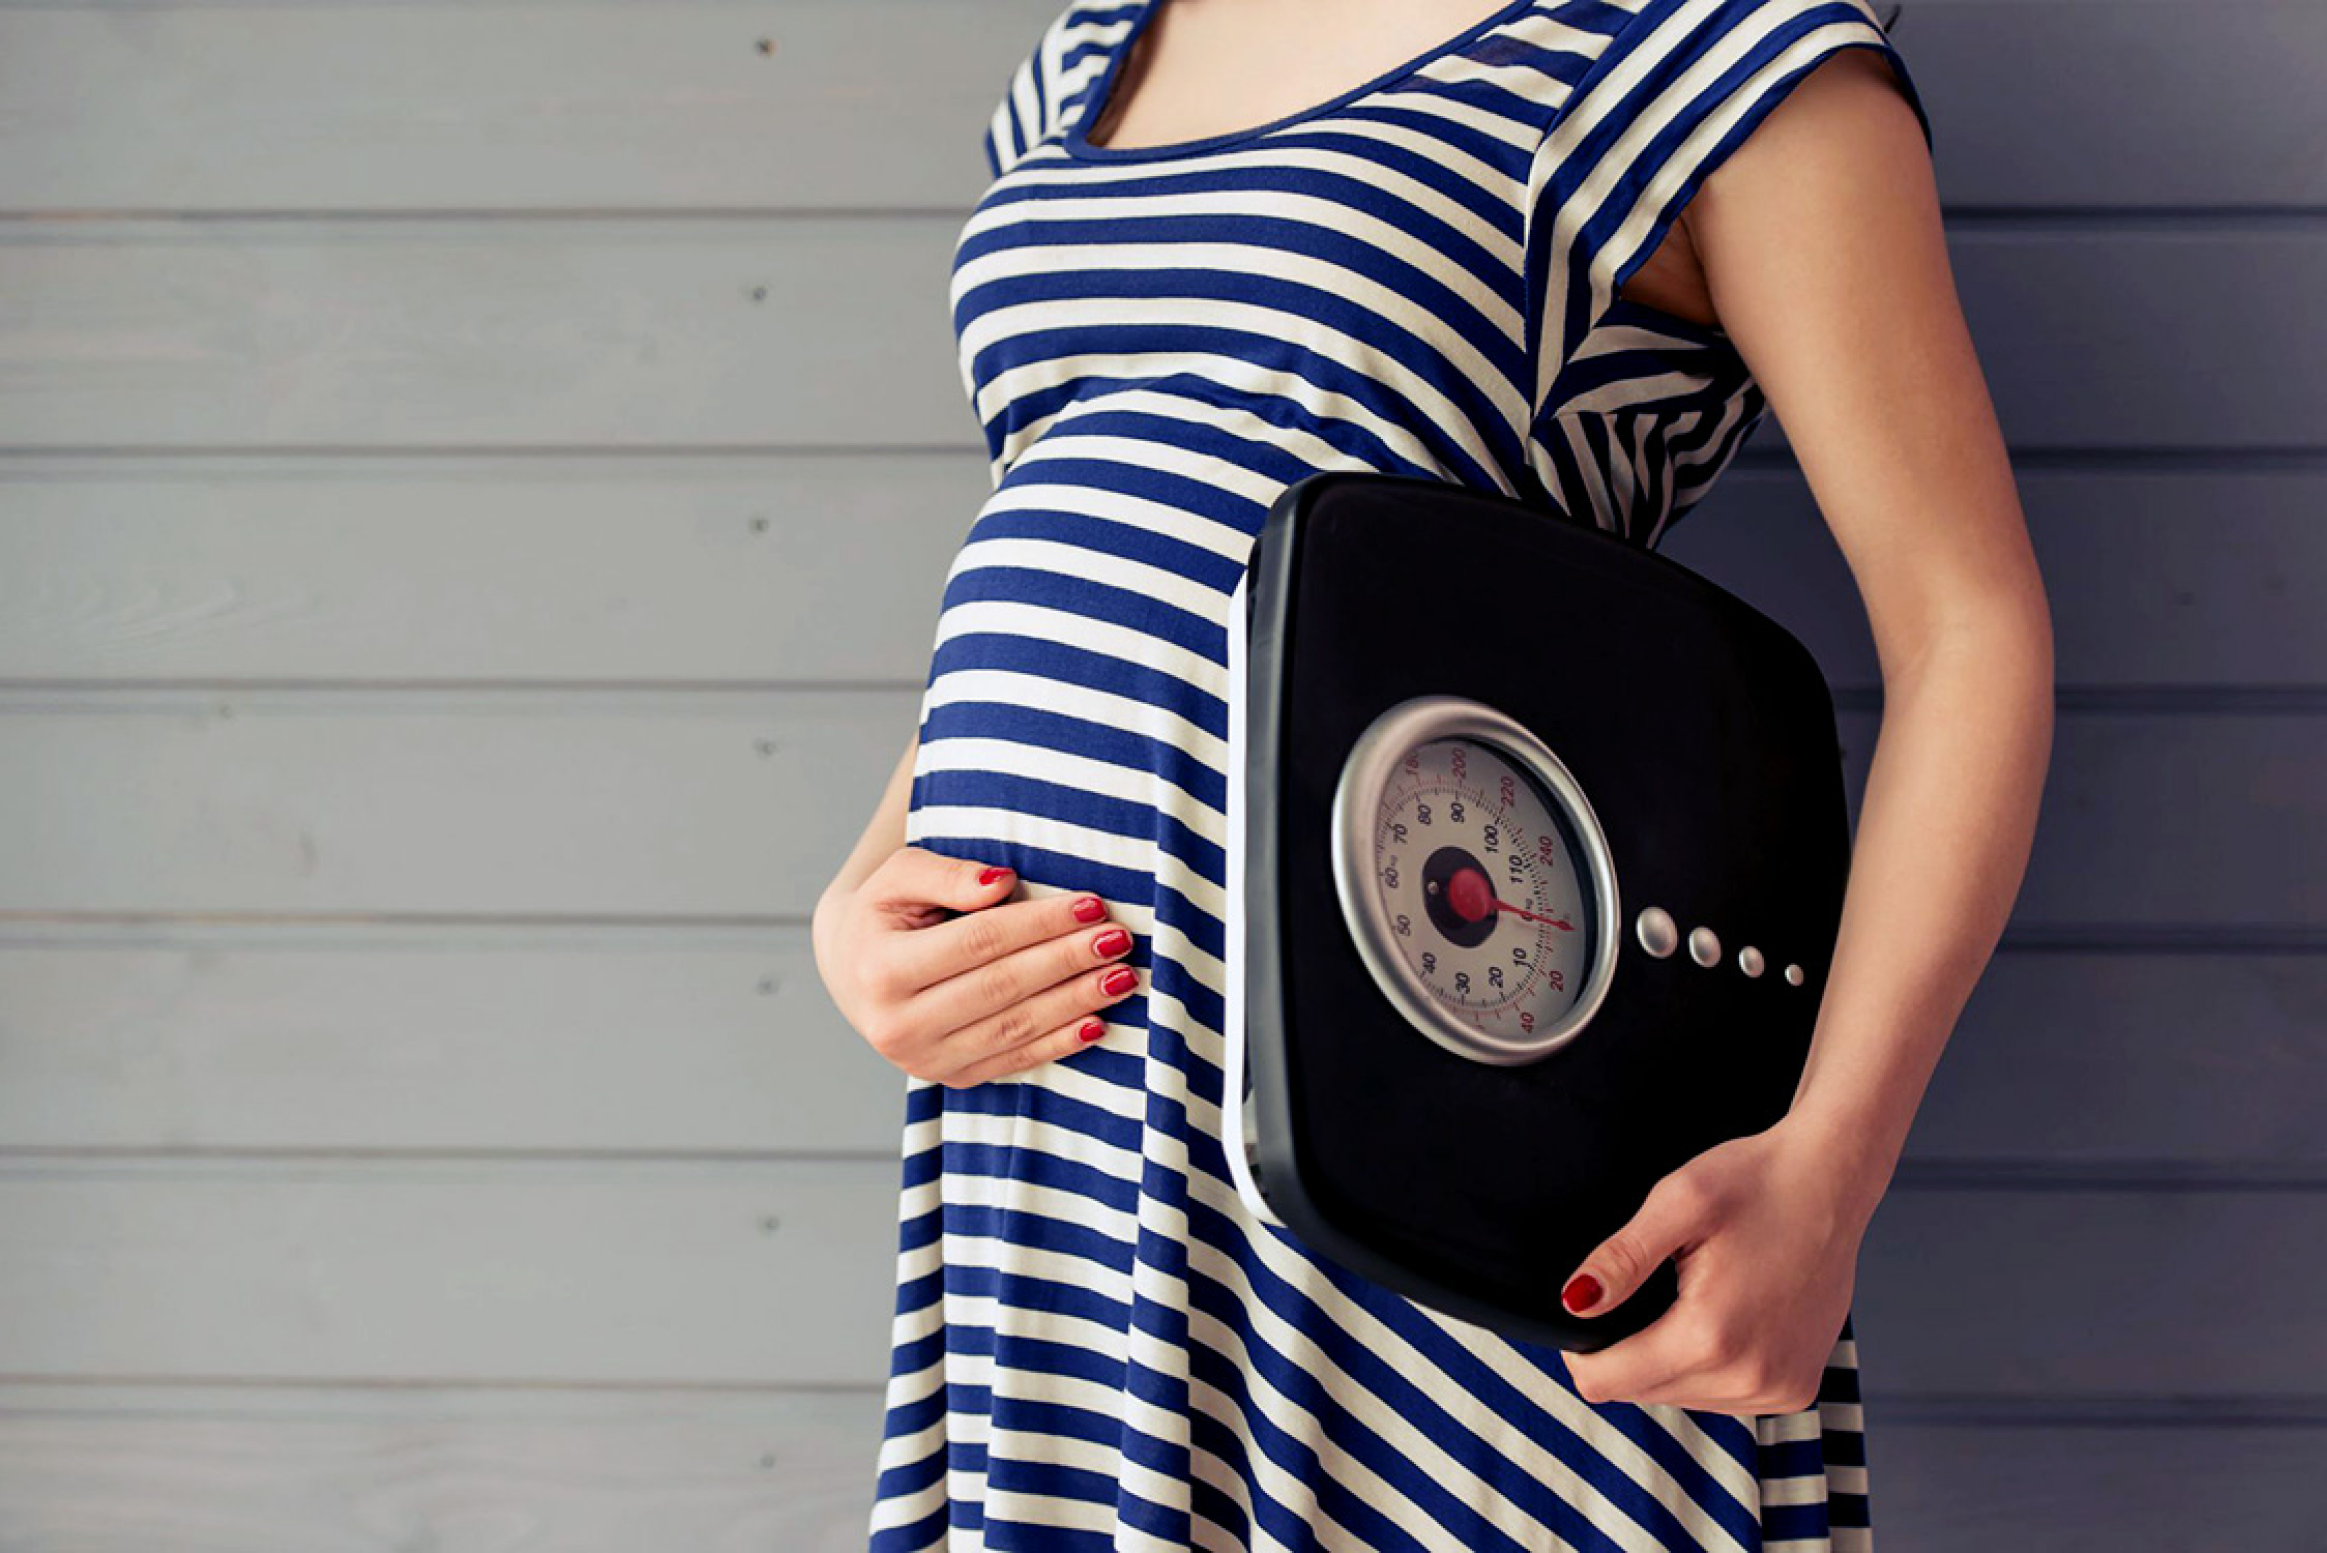 Вес во время беременности: норма и 7 факторов, влияющих на него